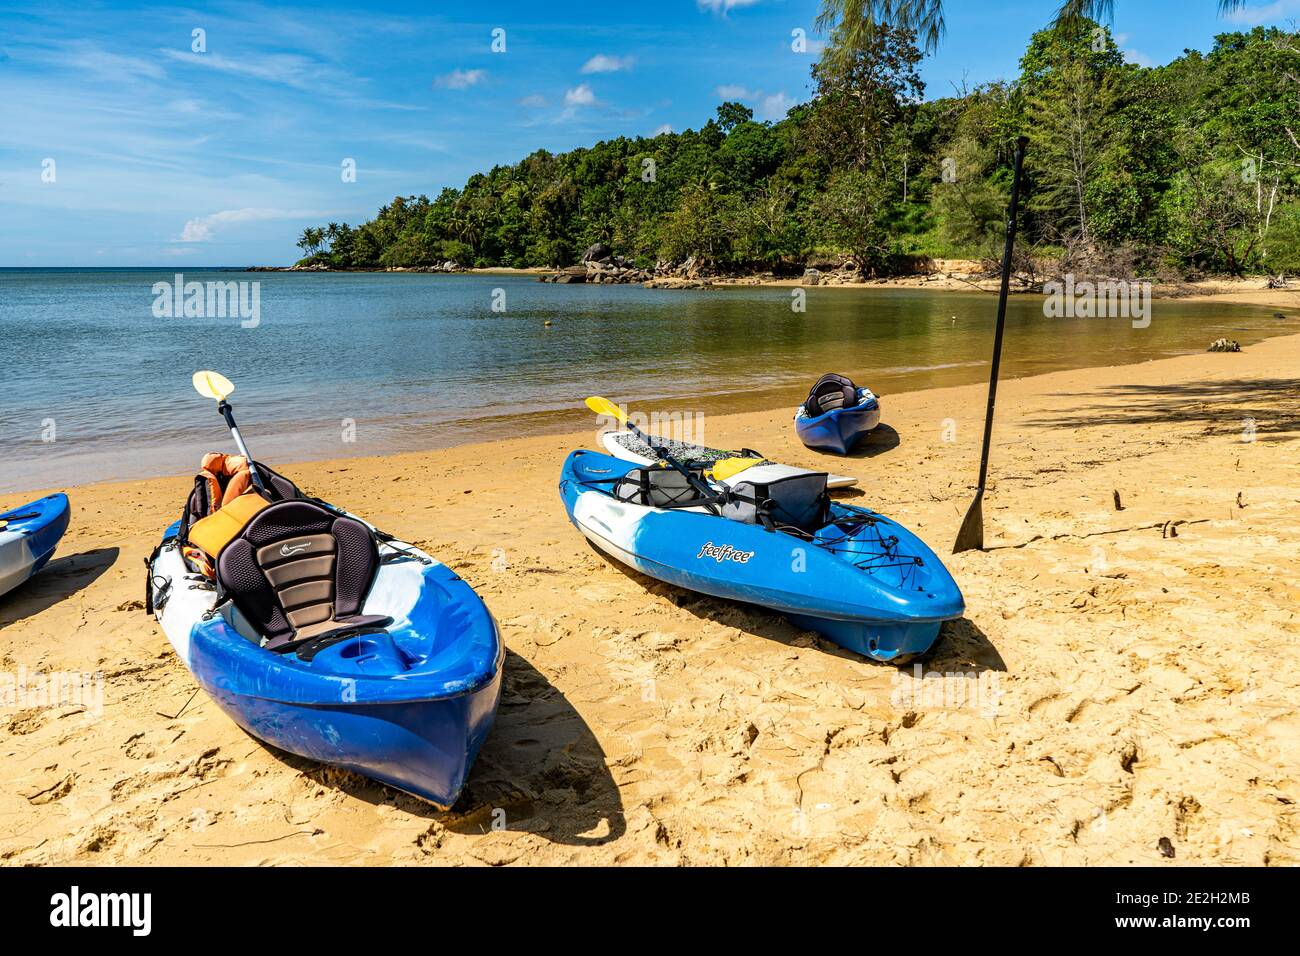 Kayaks bleus sur la plage de Layan, Phuket, Thaïlande. Vous pouvez trouver toutes sortes de sports nautiques sur lequel vous pouvez passer votre temps quand vous êtes en vacances. Banque D'Images